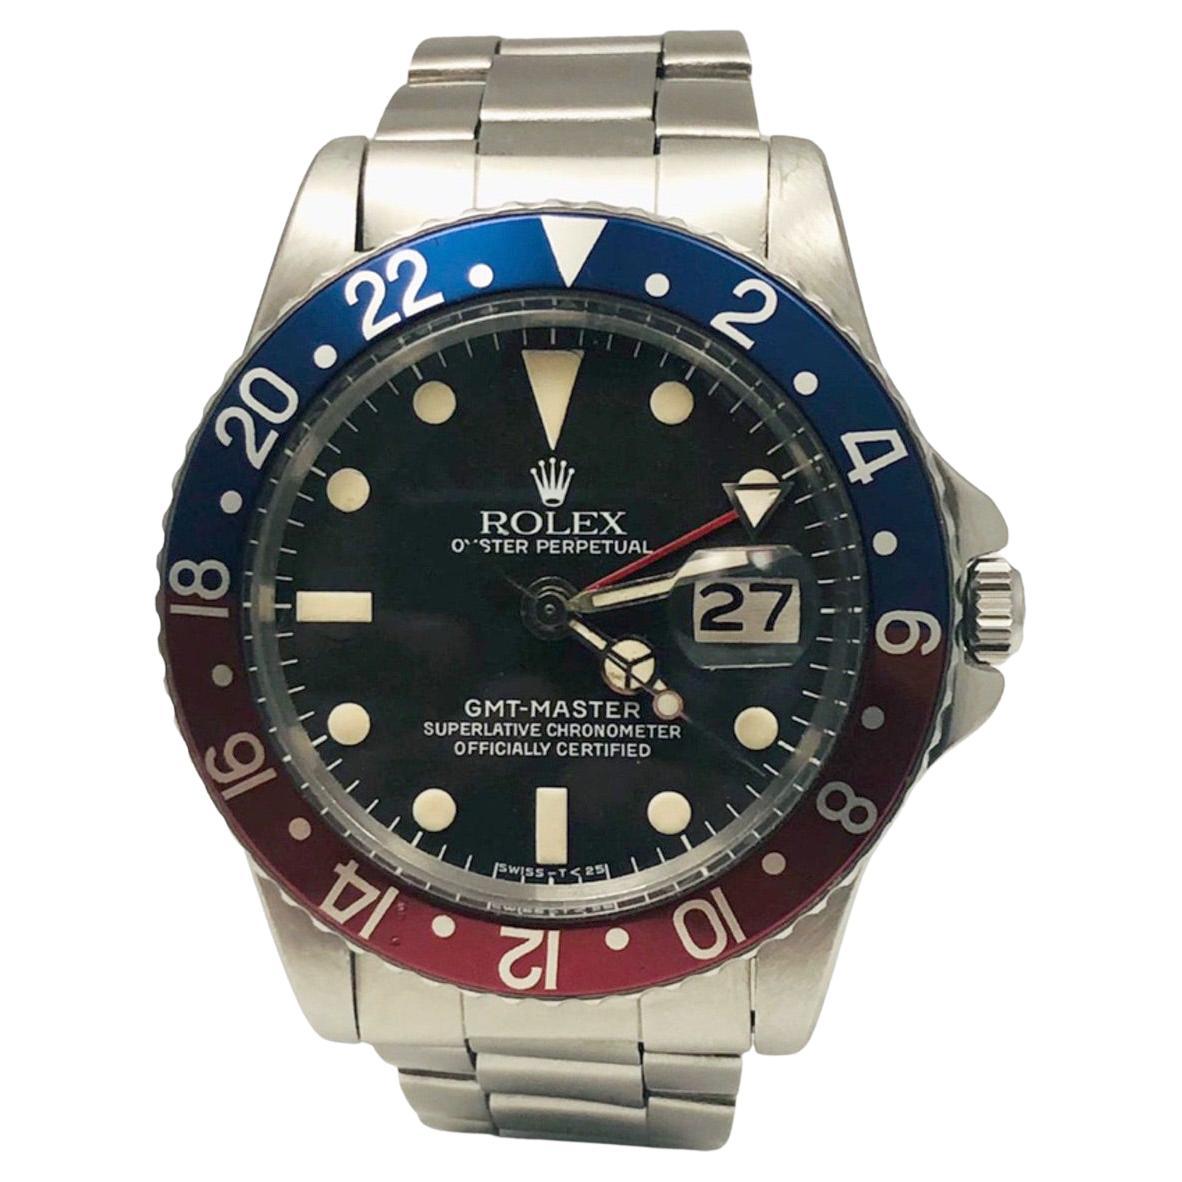 Rolex GMT-Master Ref. 1675 'Pepsi' Stainless Steel Red & Blue Bezel Watch